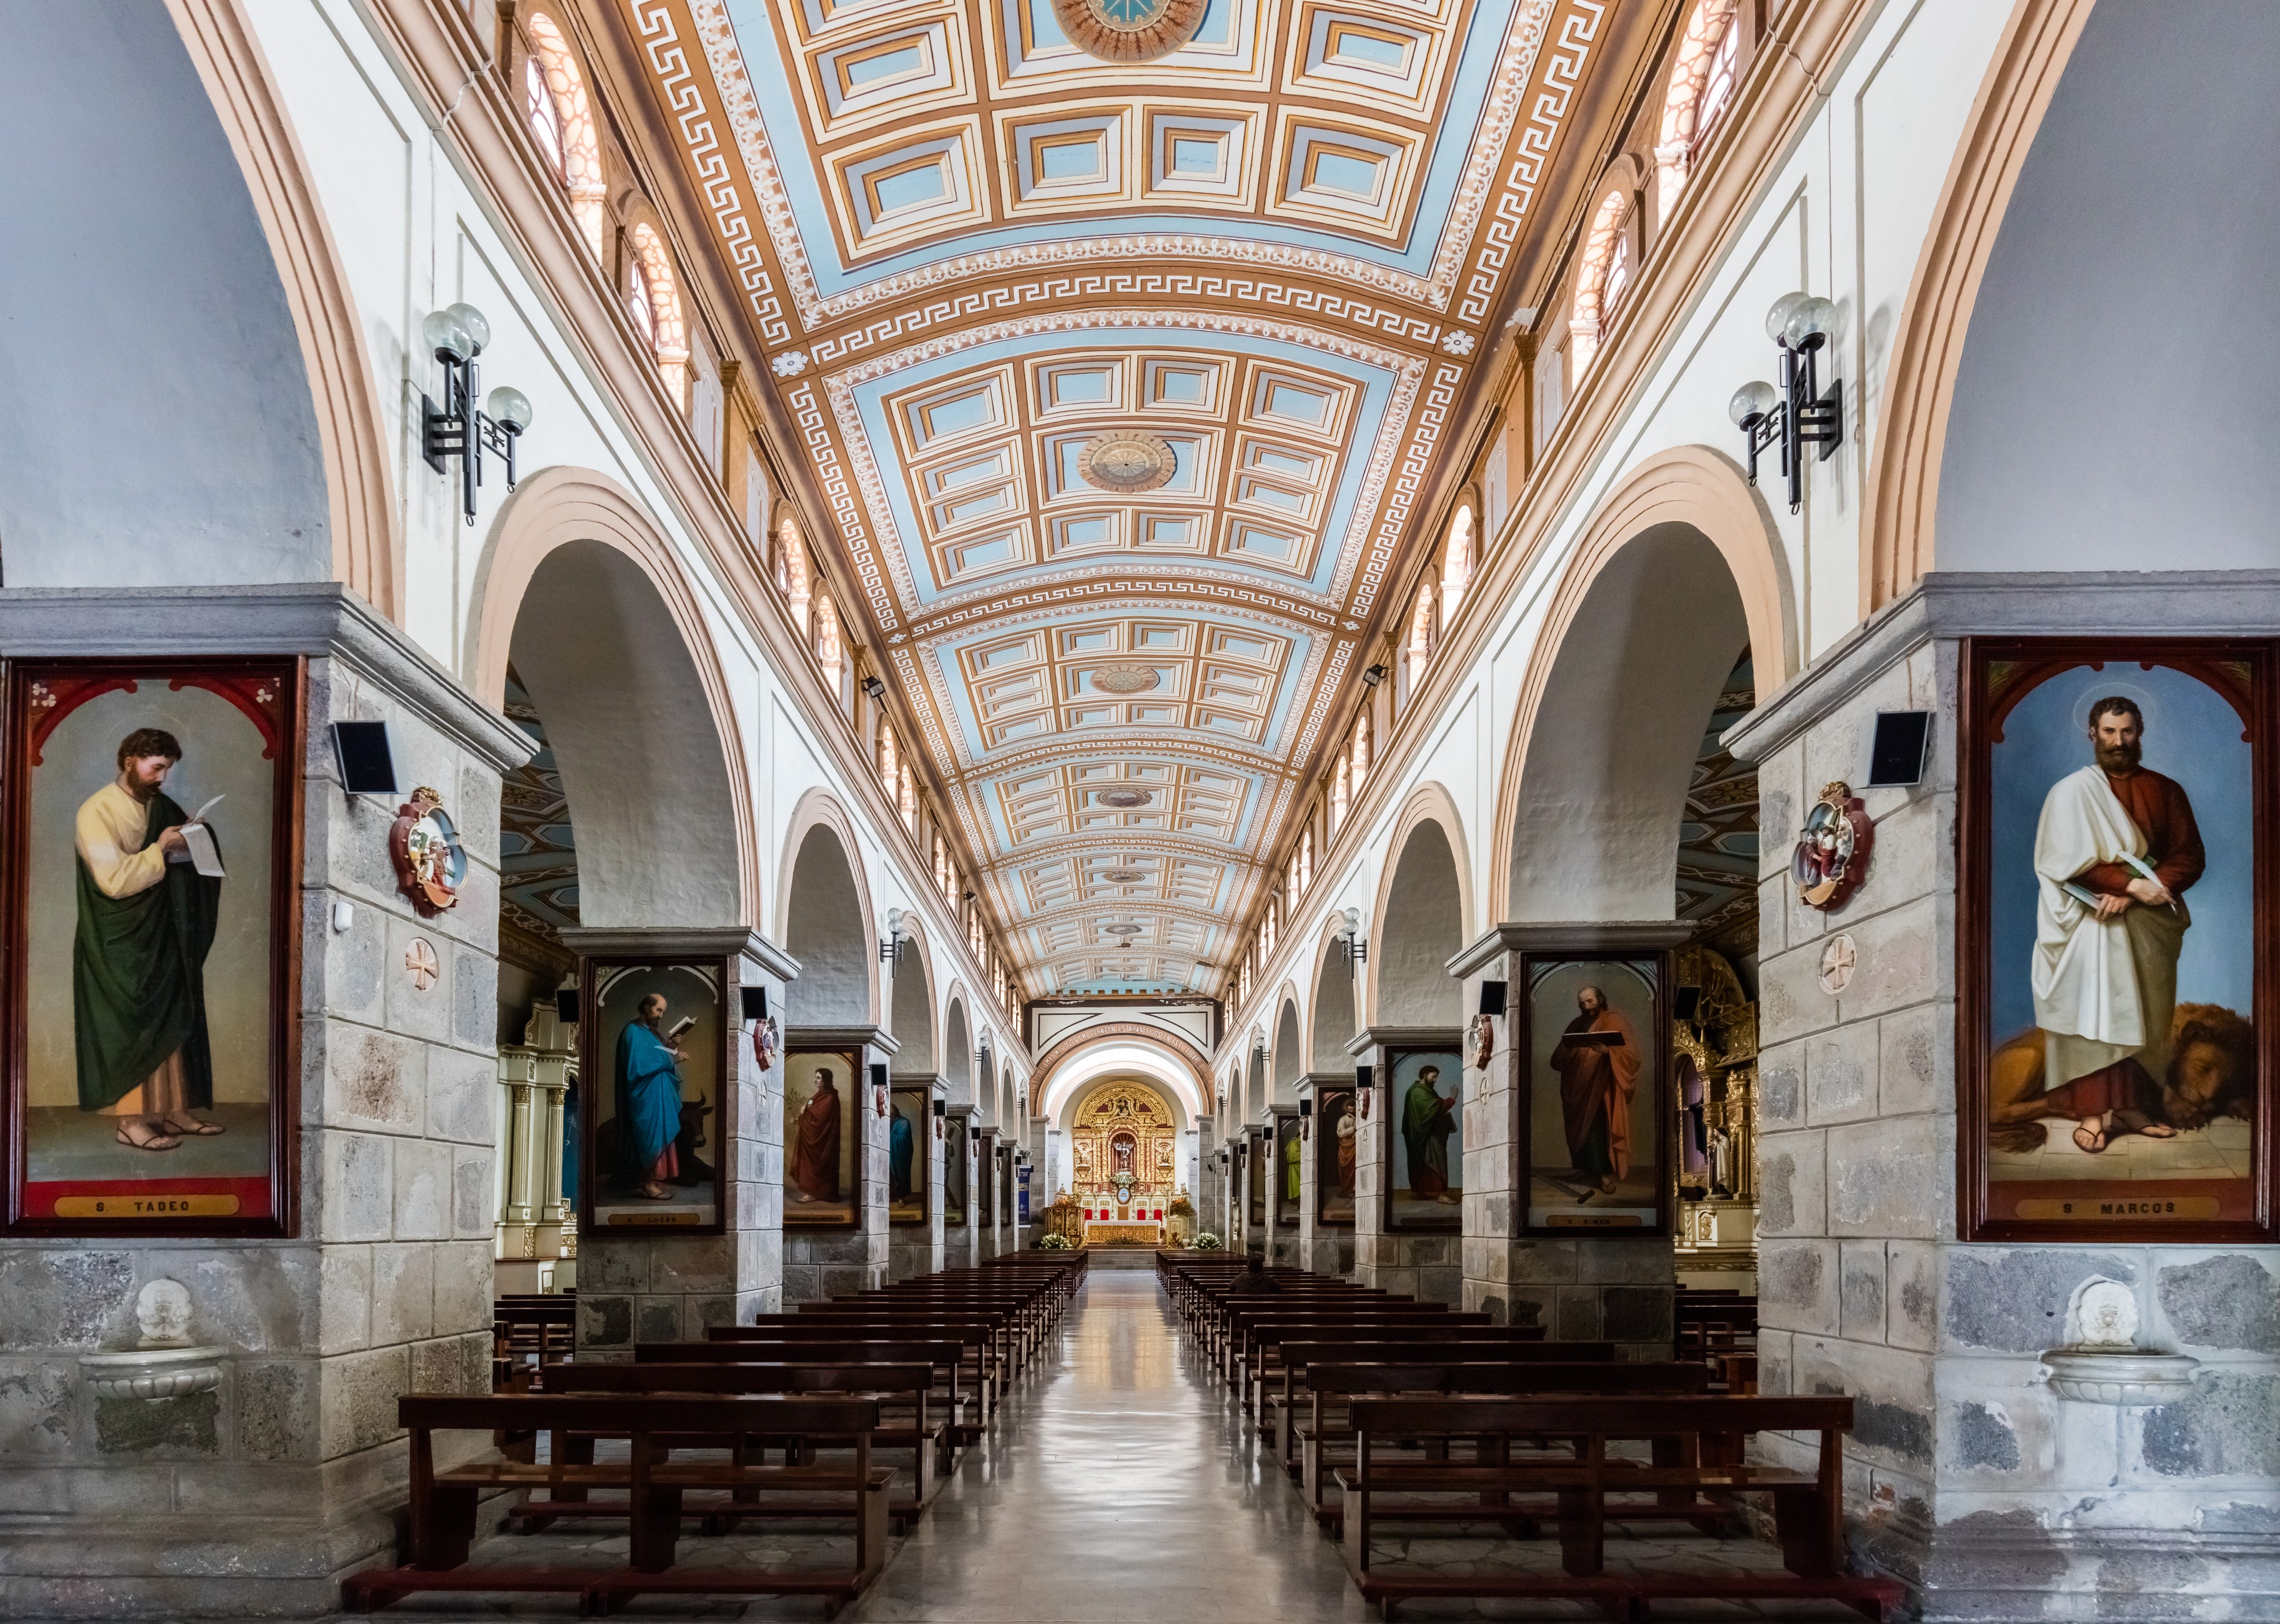 Iglesia de la Catedral, San Antonio de Ibarra, Ecuador, 2015-07-21, DD 21